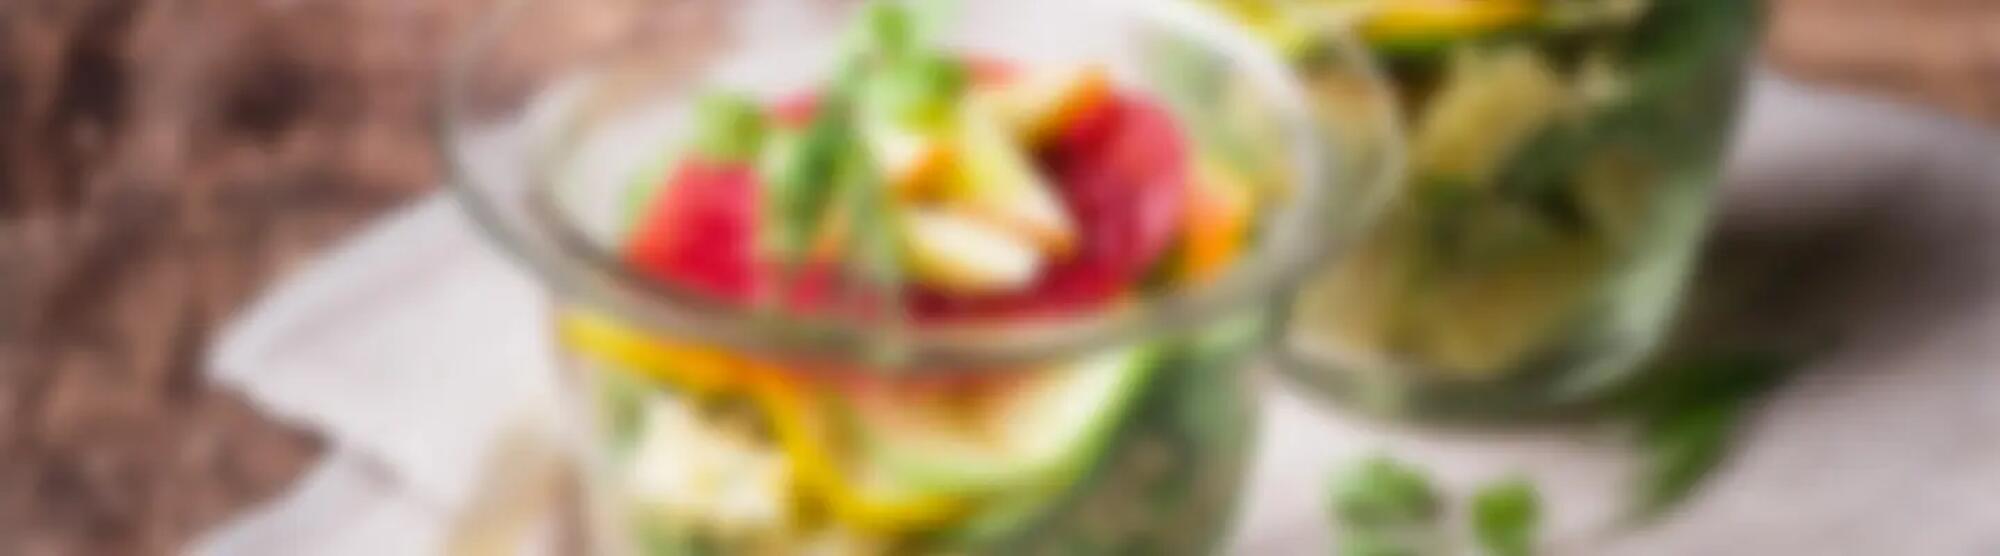 Recette : Salade de quinoa aux courgettes et fromage à raclette